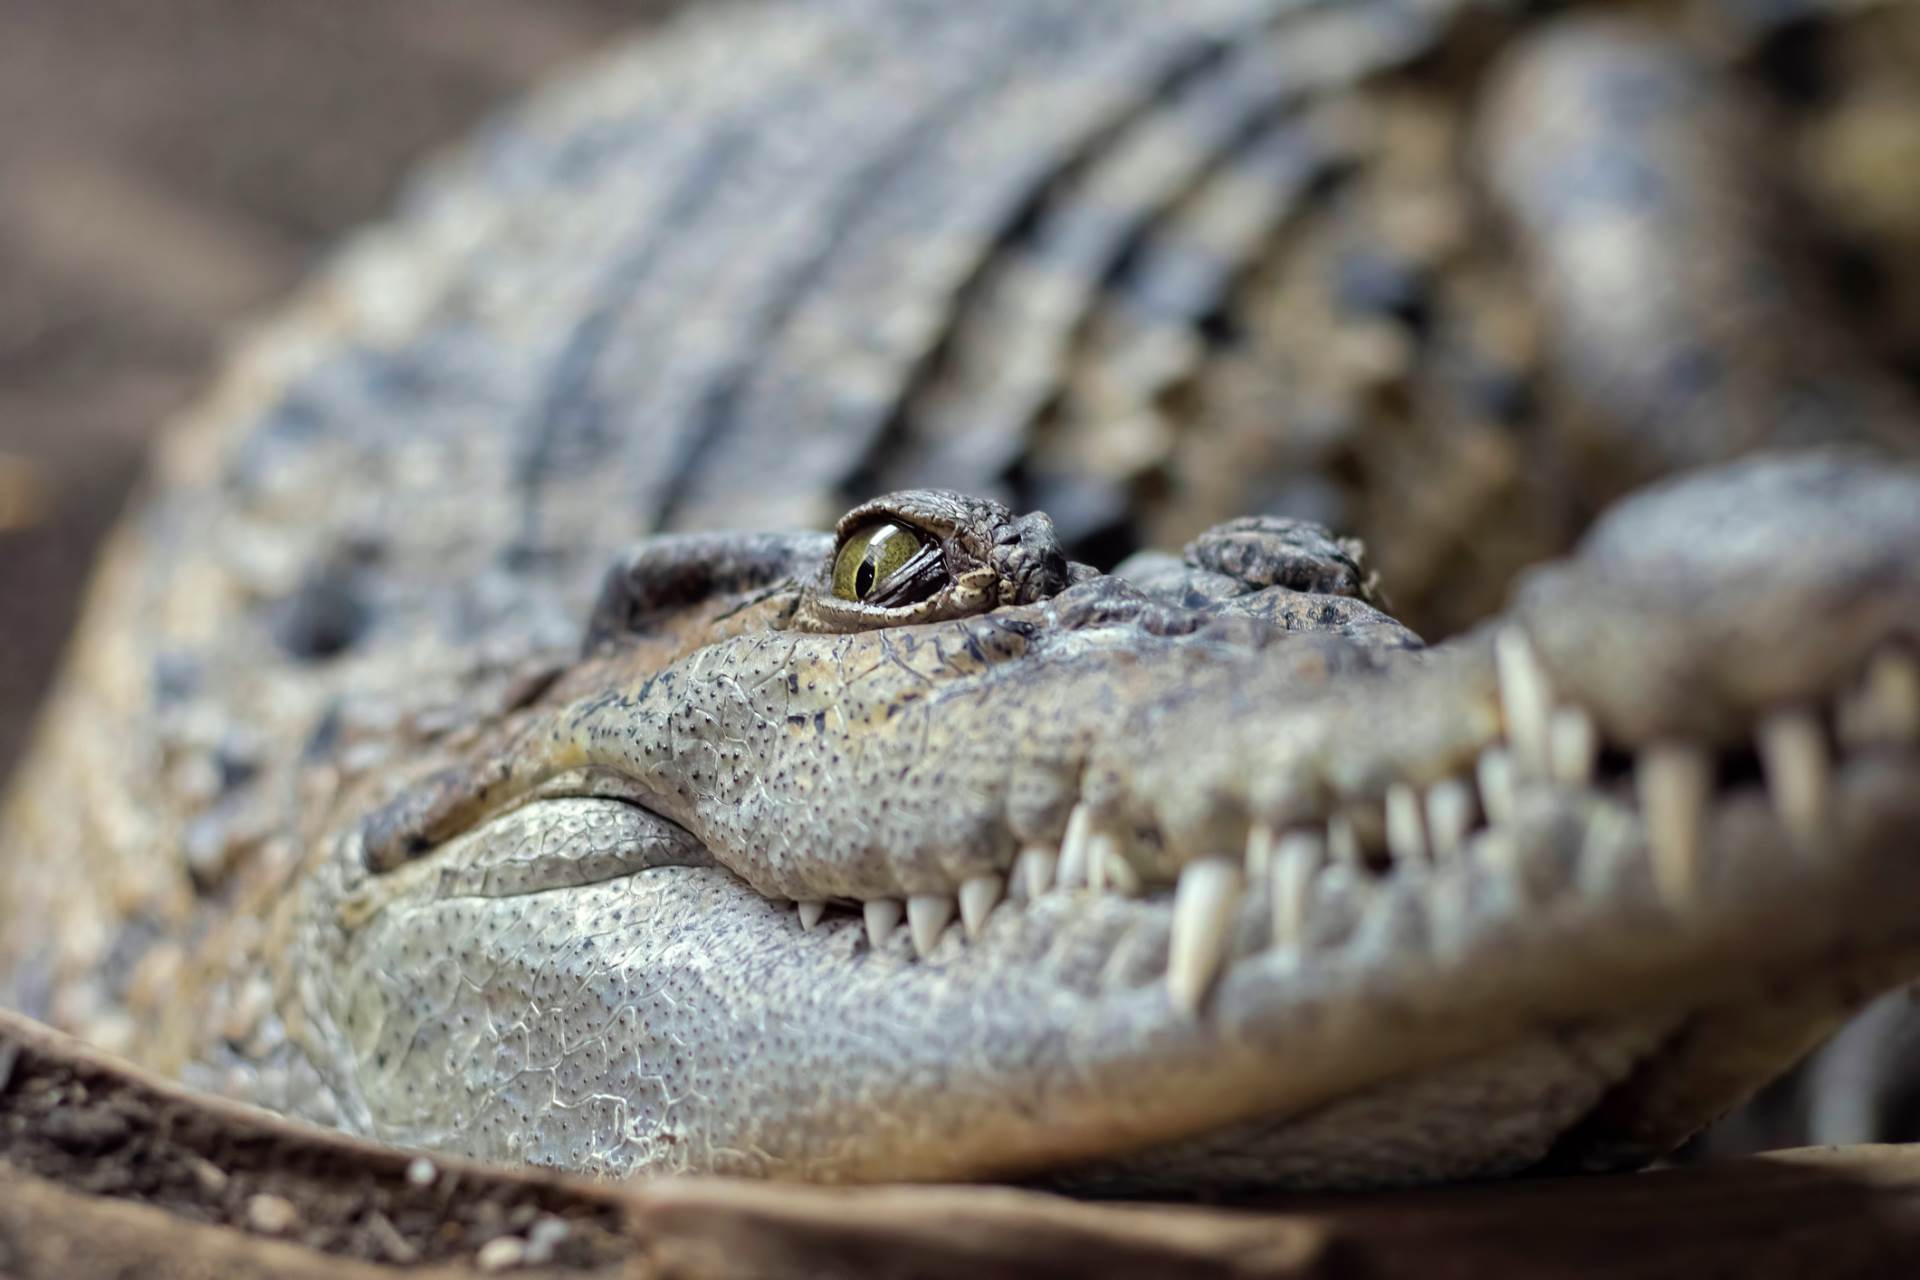  Rajske plaže okupirali krokodili umesto turista 